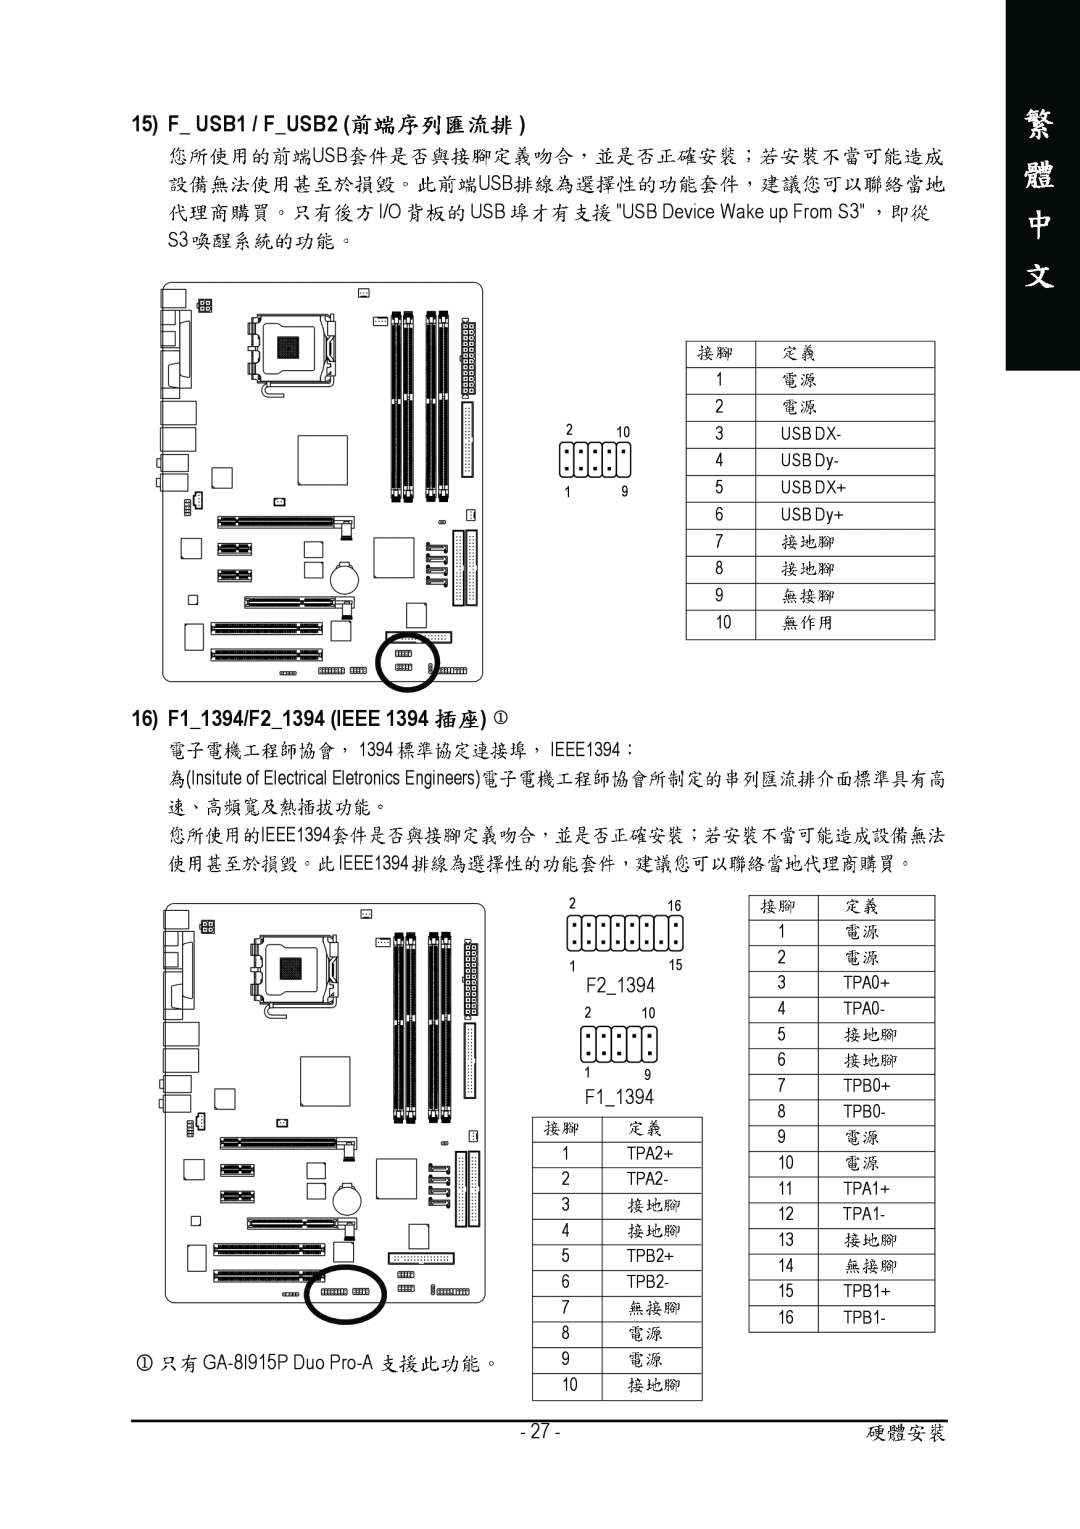 Gigabyte GA-8I915P manual F USB1 / FUSB2, 16 F11394/F21394 IEEE, IEEE1394 